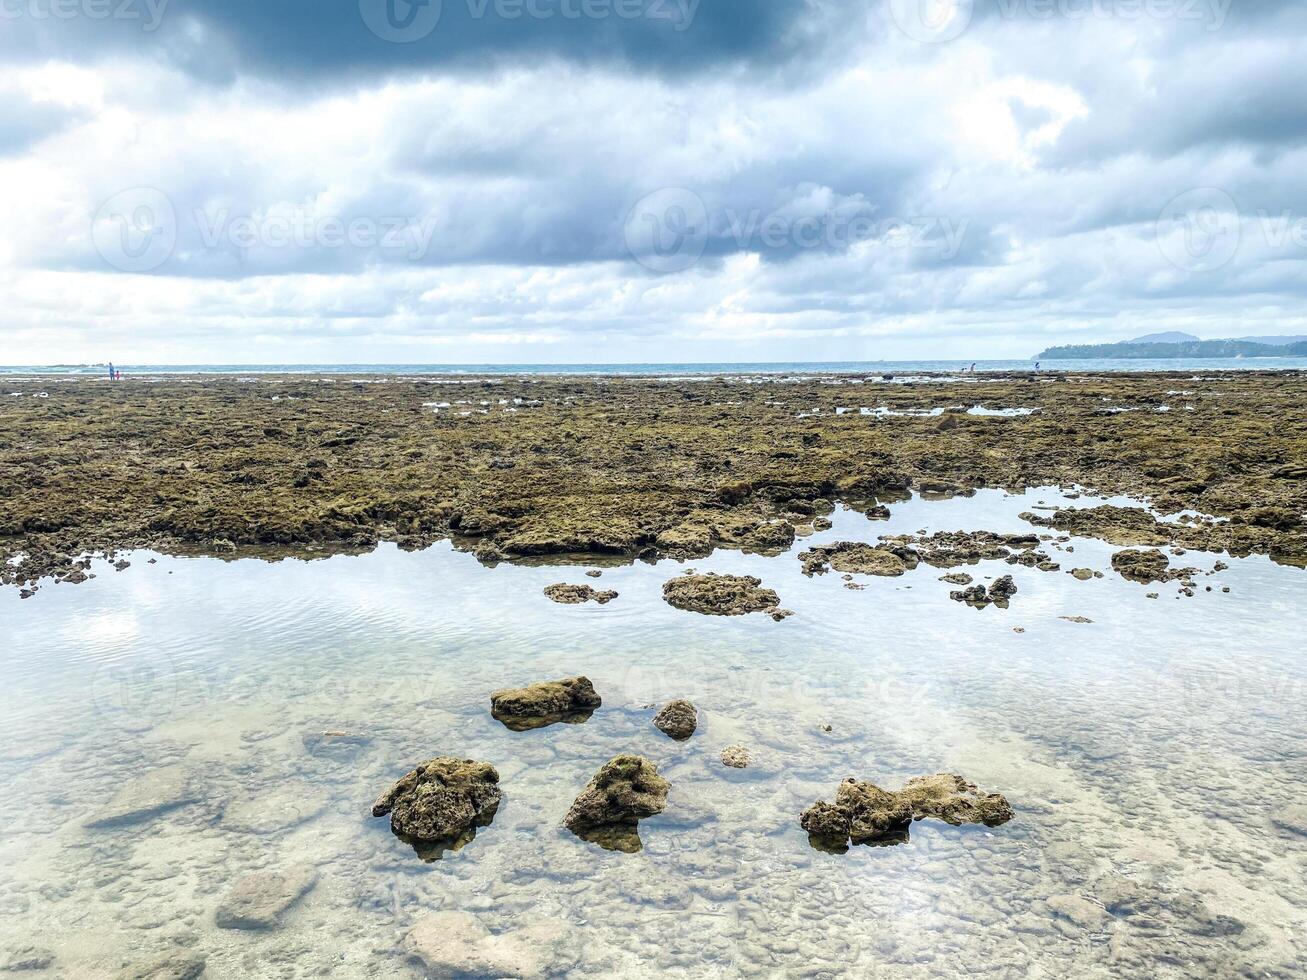 le surface de le mer est une vibrant Toile de abstrait motifs, comme vagues Pause contre le rocheux rive, formant une Stupéfiant fond d'écran de la nature talent artistique. photo